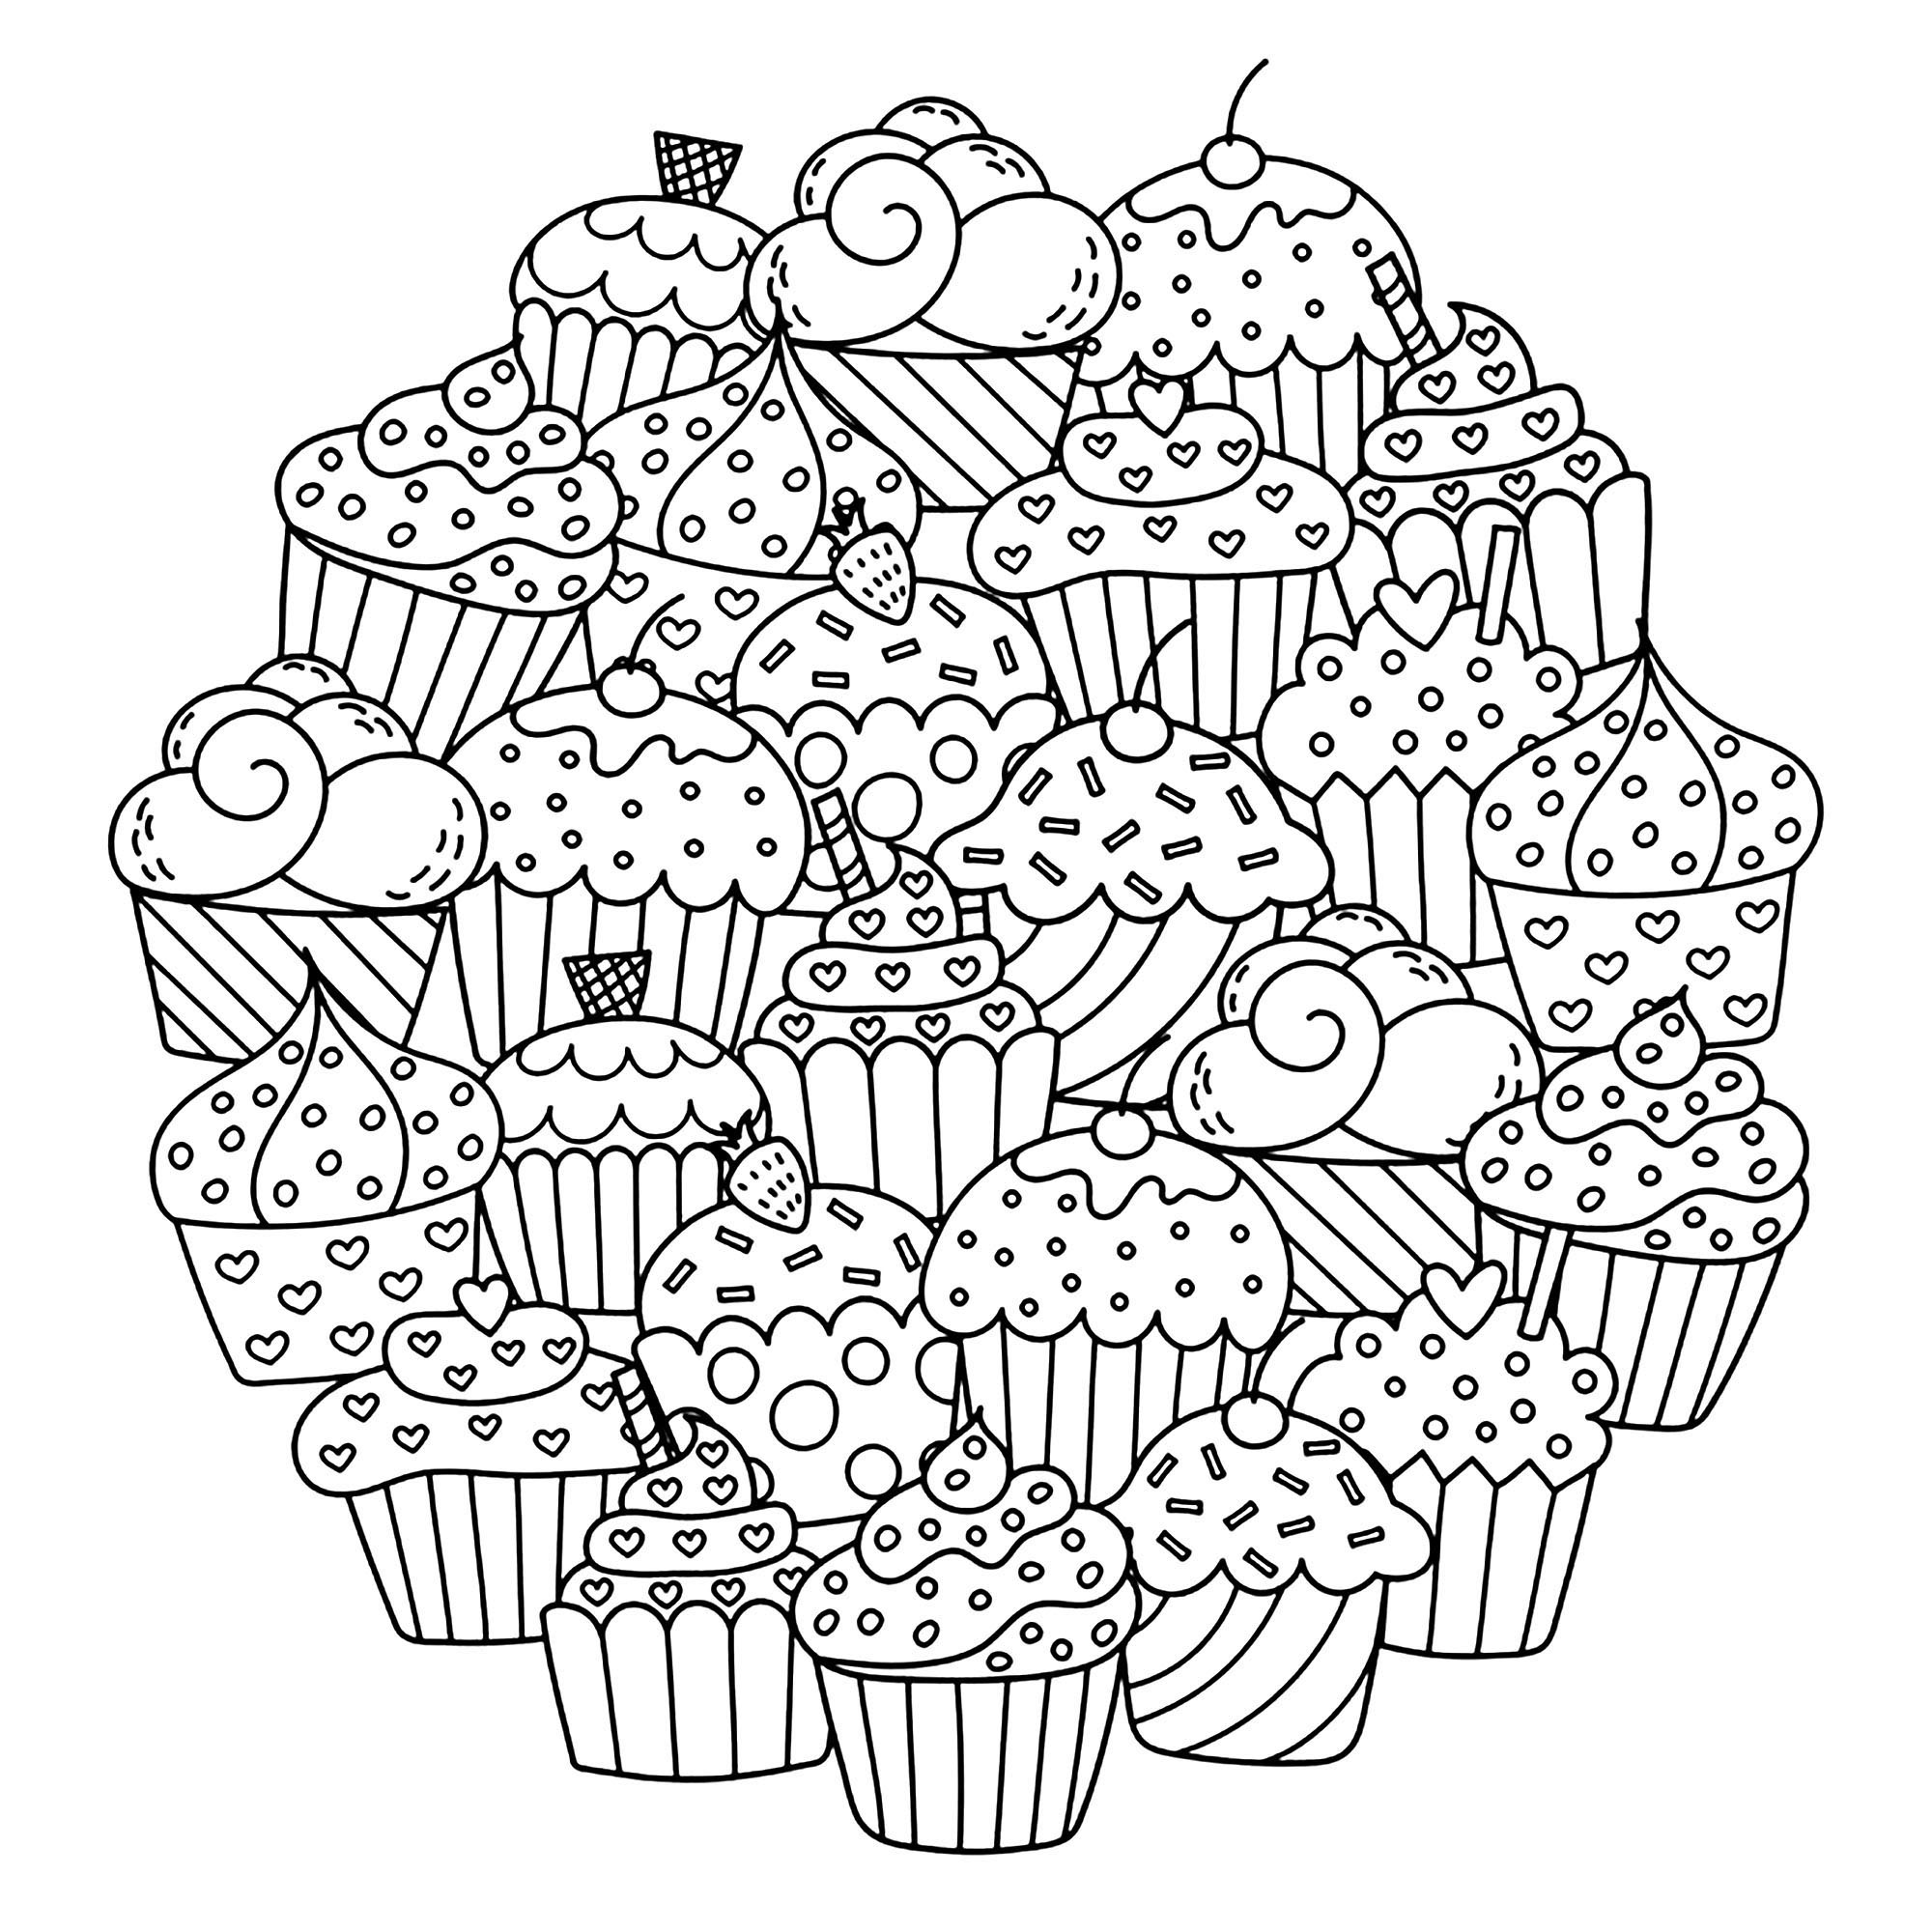 Un grazioso mandala composto da tanti cupcake... Rendeteli deliziosi con i vostri pennarelli, matite o pennelli, Fonte : 123rf   Artista : Gulnara Sabirova